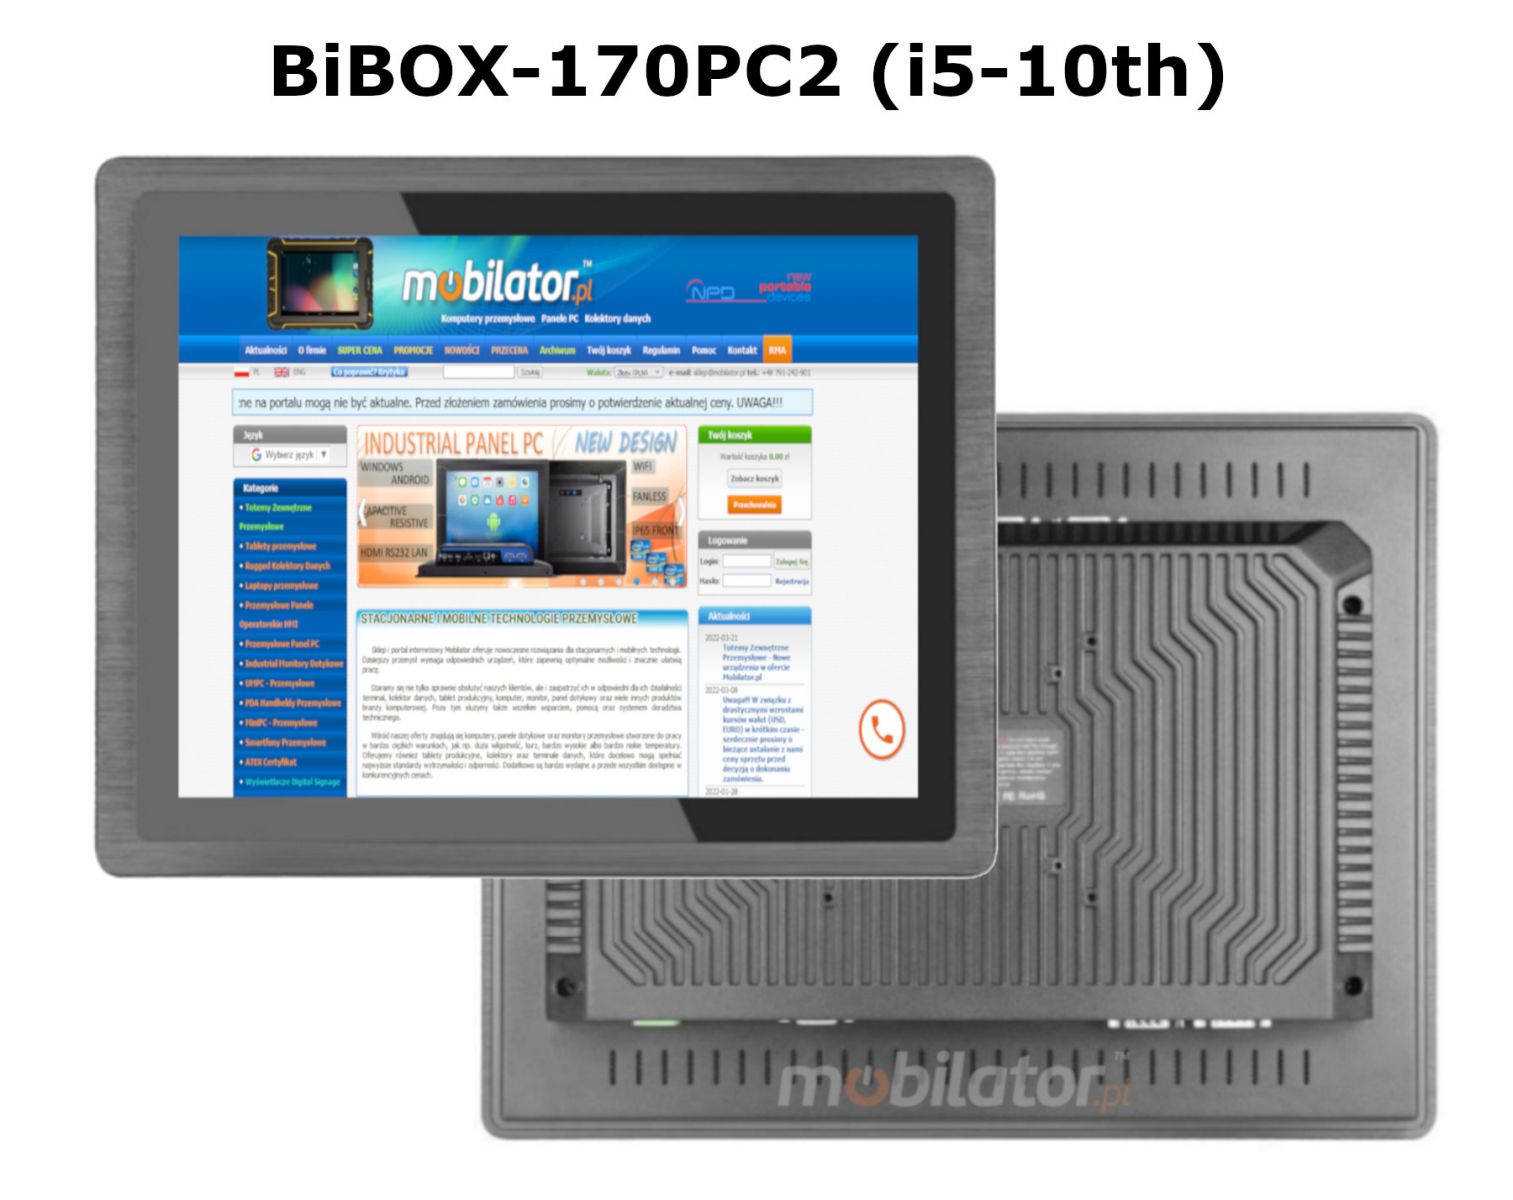 BIBOX-170PC2 z pojemnym dyskiem SSD i RAM komputer panelowy z WiFi i Bluetooth